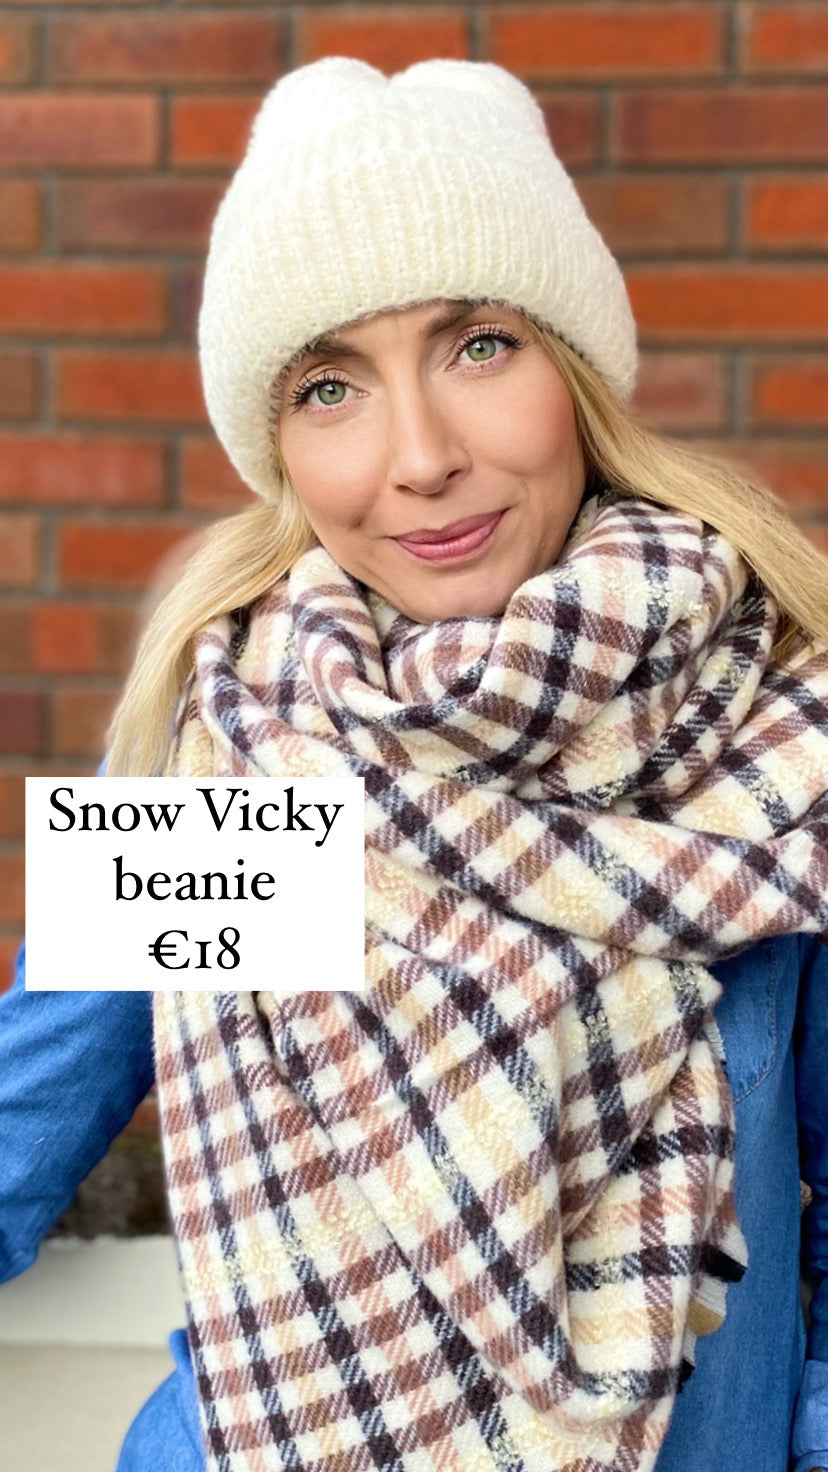 Snow Vicky beanie